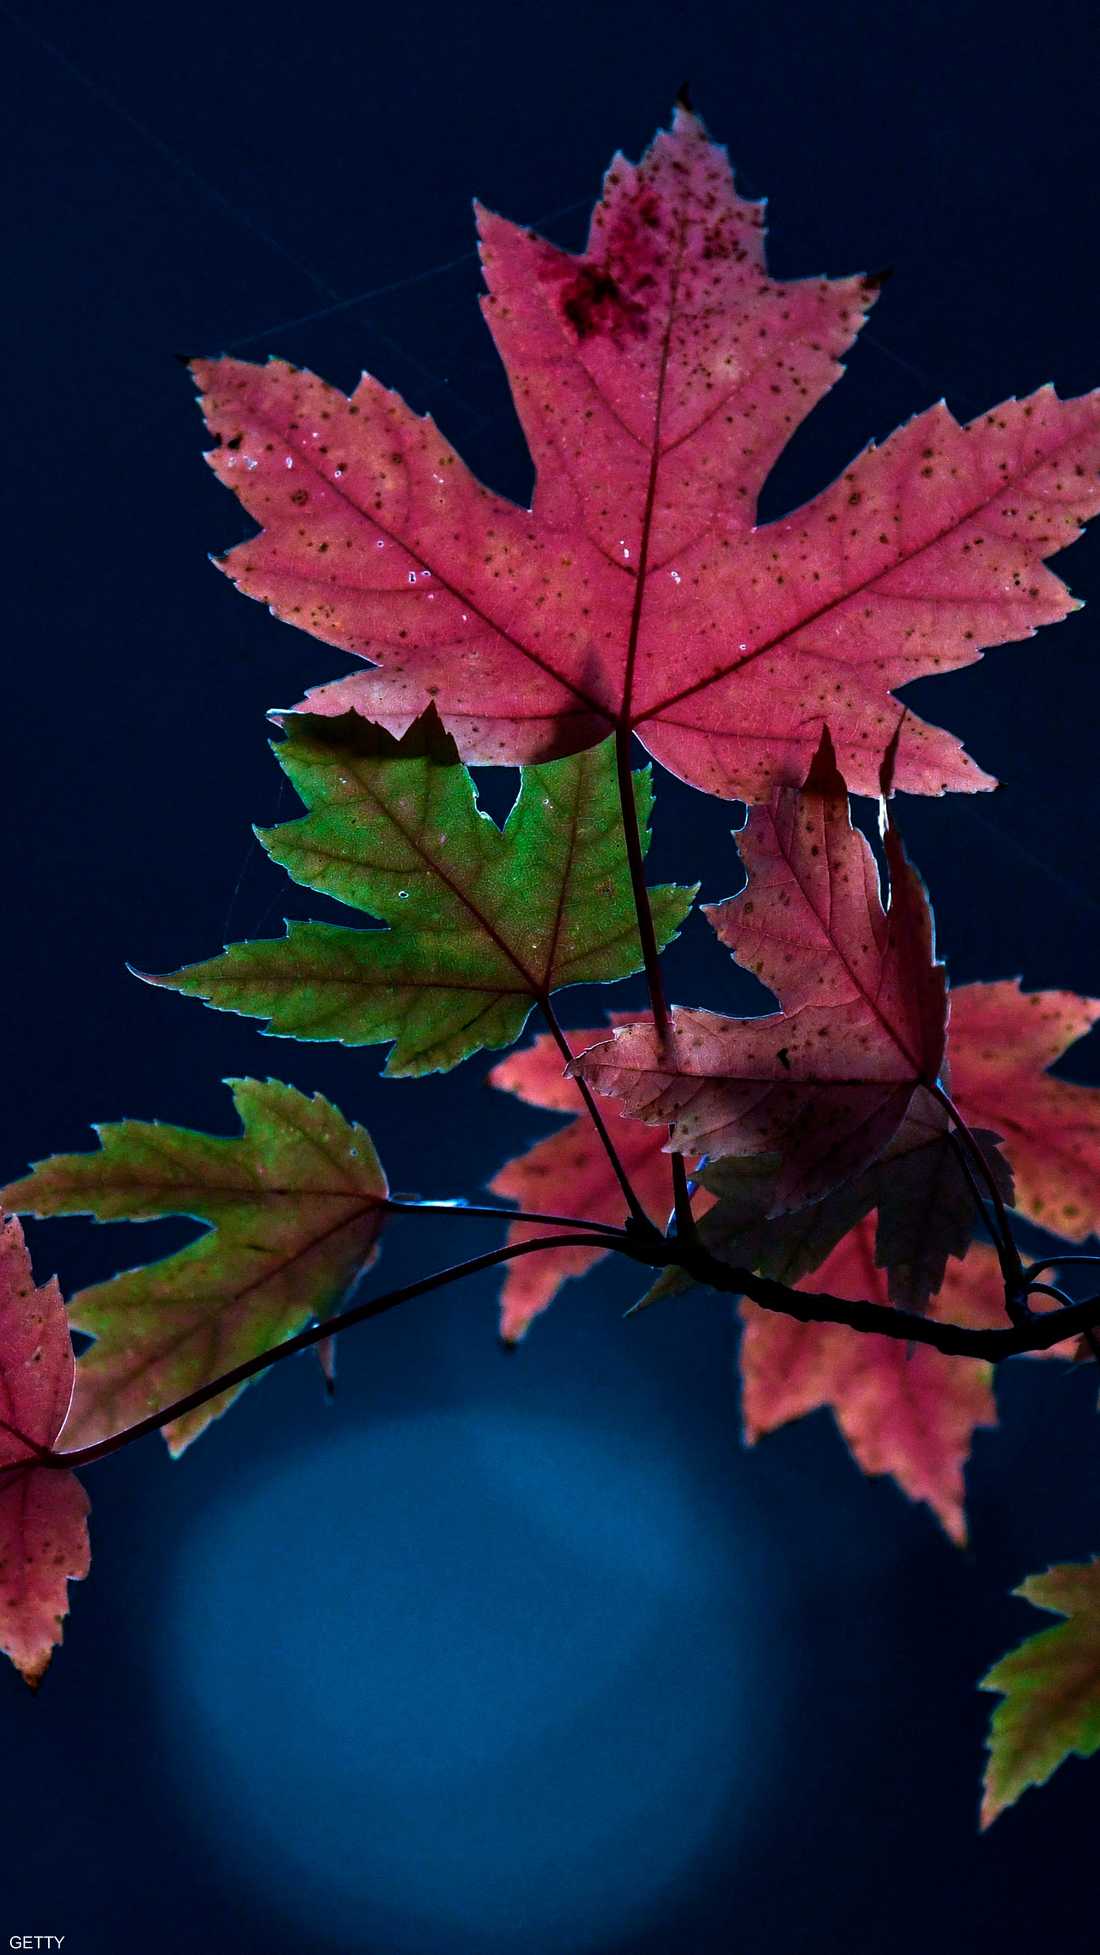 أوراق ملونة تتدلى من شجرة بحديقة في دورتموند غربي ألمانيا، إذ يزهر هذا النوع من الشجر في فصل الخريف.